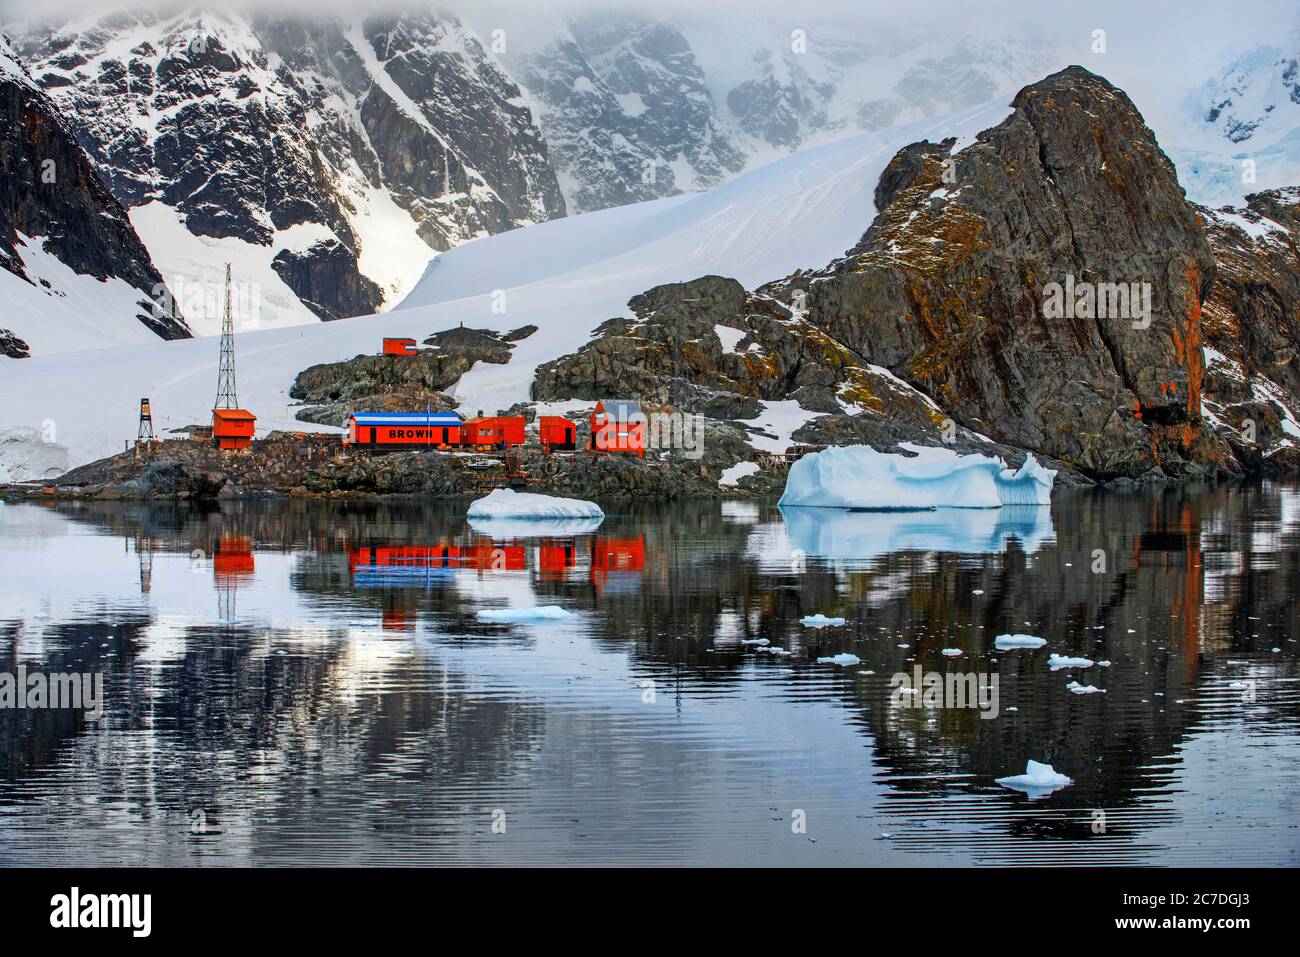 Almirante Brown Station Argentinische Sommerbasis auf der Antarktischen Halbinsel Antarktis Polarregionen, Antarktis, Paradise Harbour aka Paradise Bay. Ar Stockfoto